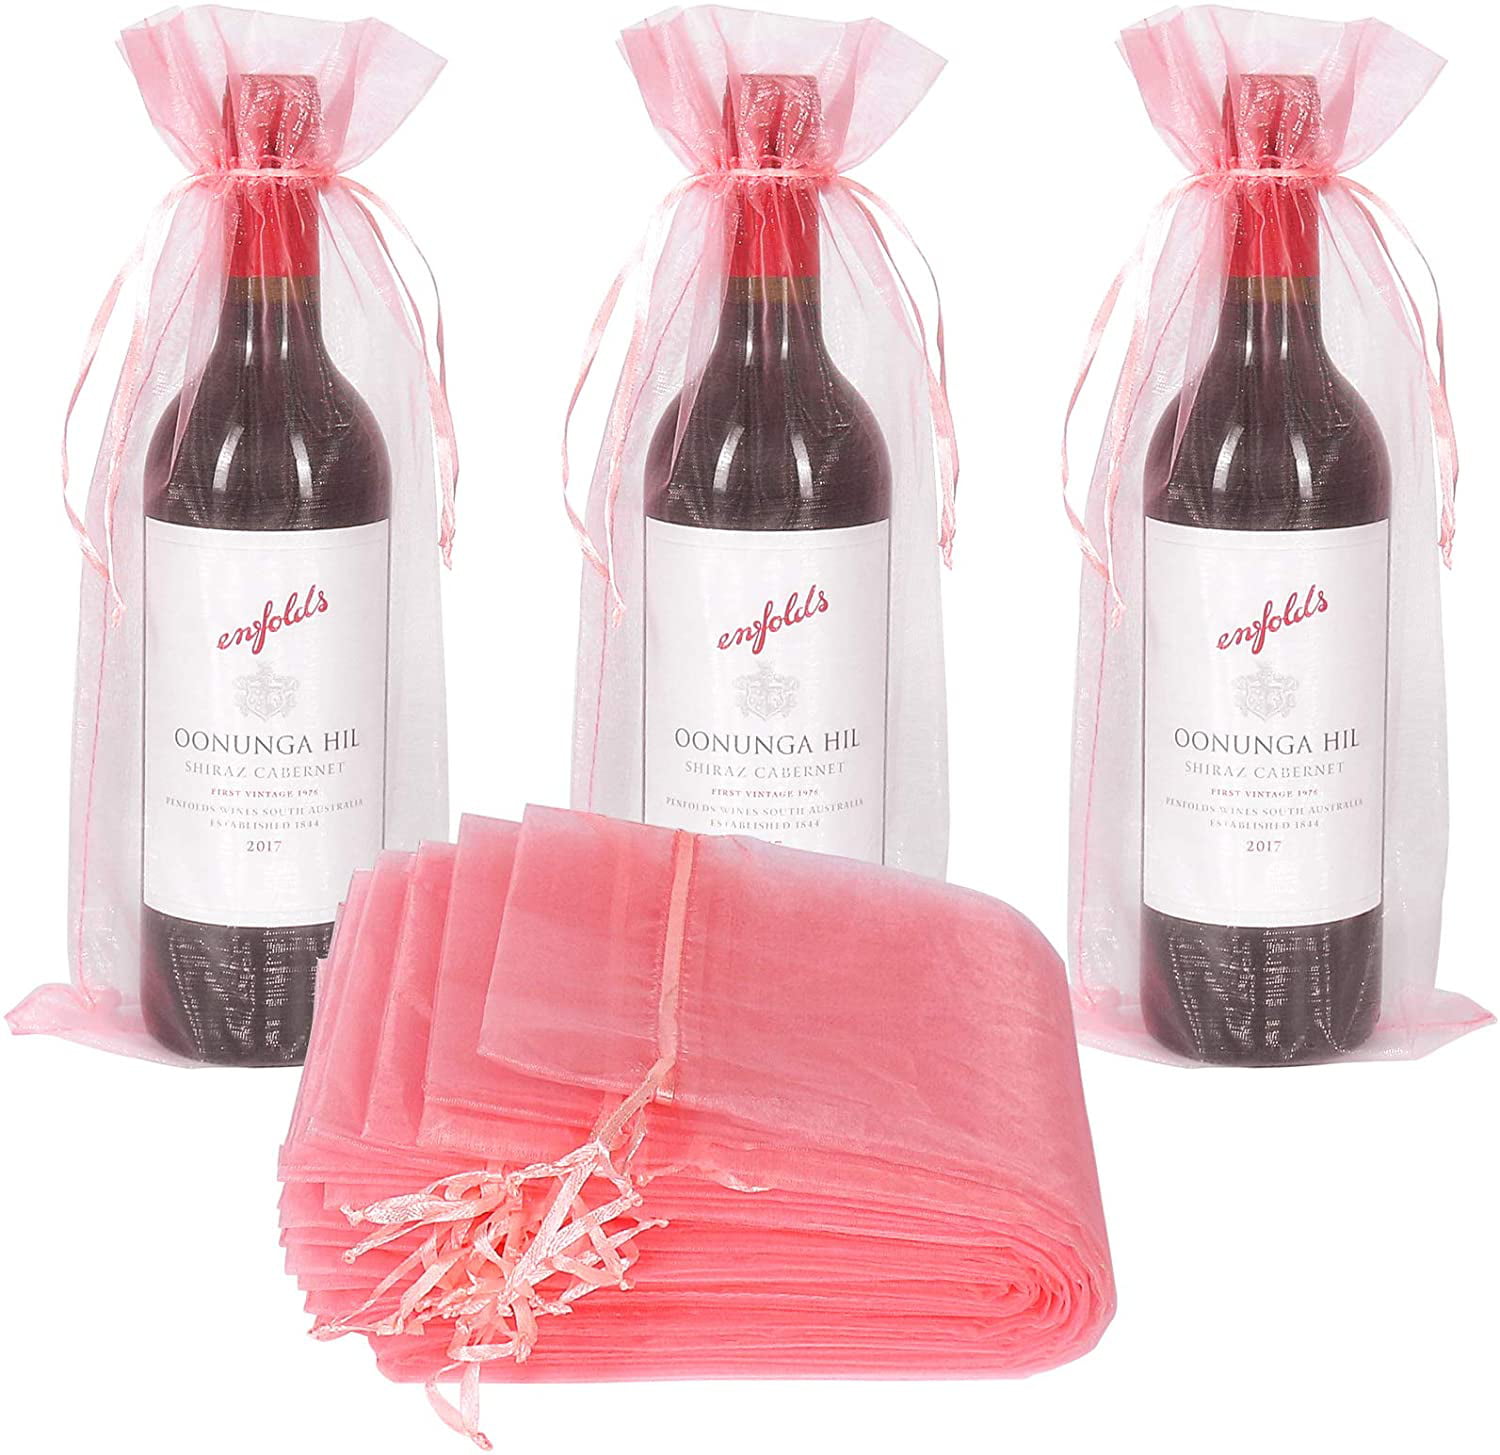 Multi Color Wine Bottle Bag Drawstring Carrier Storage Bag Decor Gifting G 